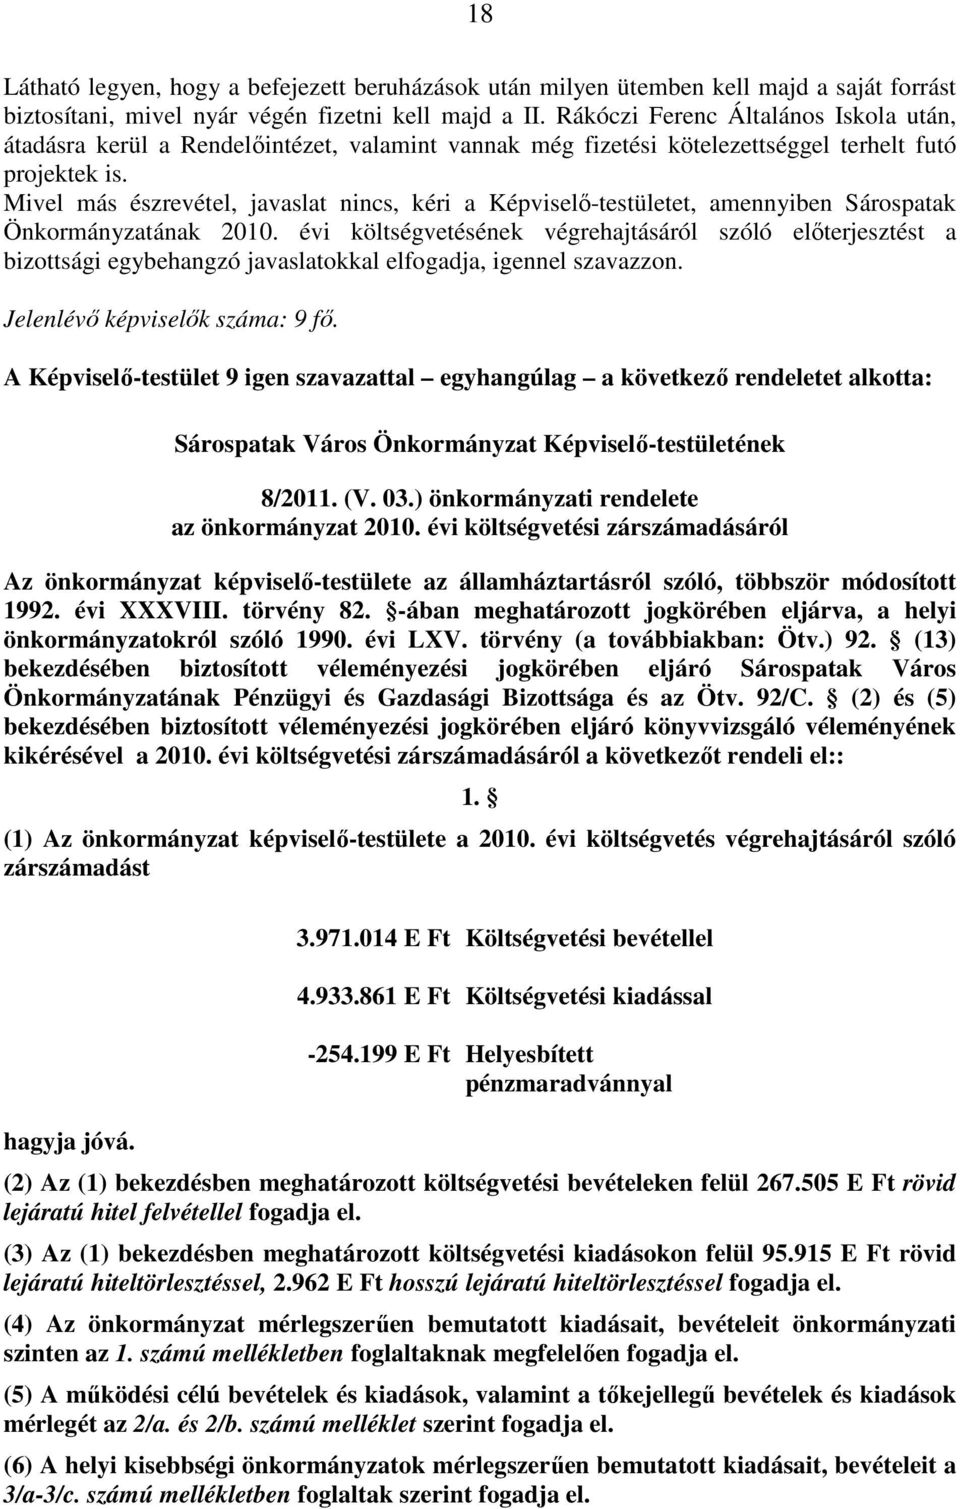 Mivel más észrevétel, javaslat nincs, kéri a Képviselı-testületet, amennyiben Sárospatak Önkormányzatának 2010.